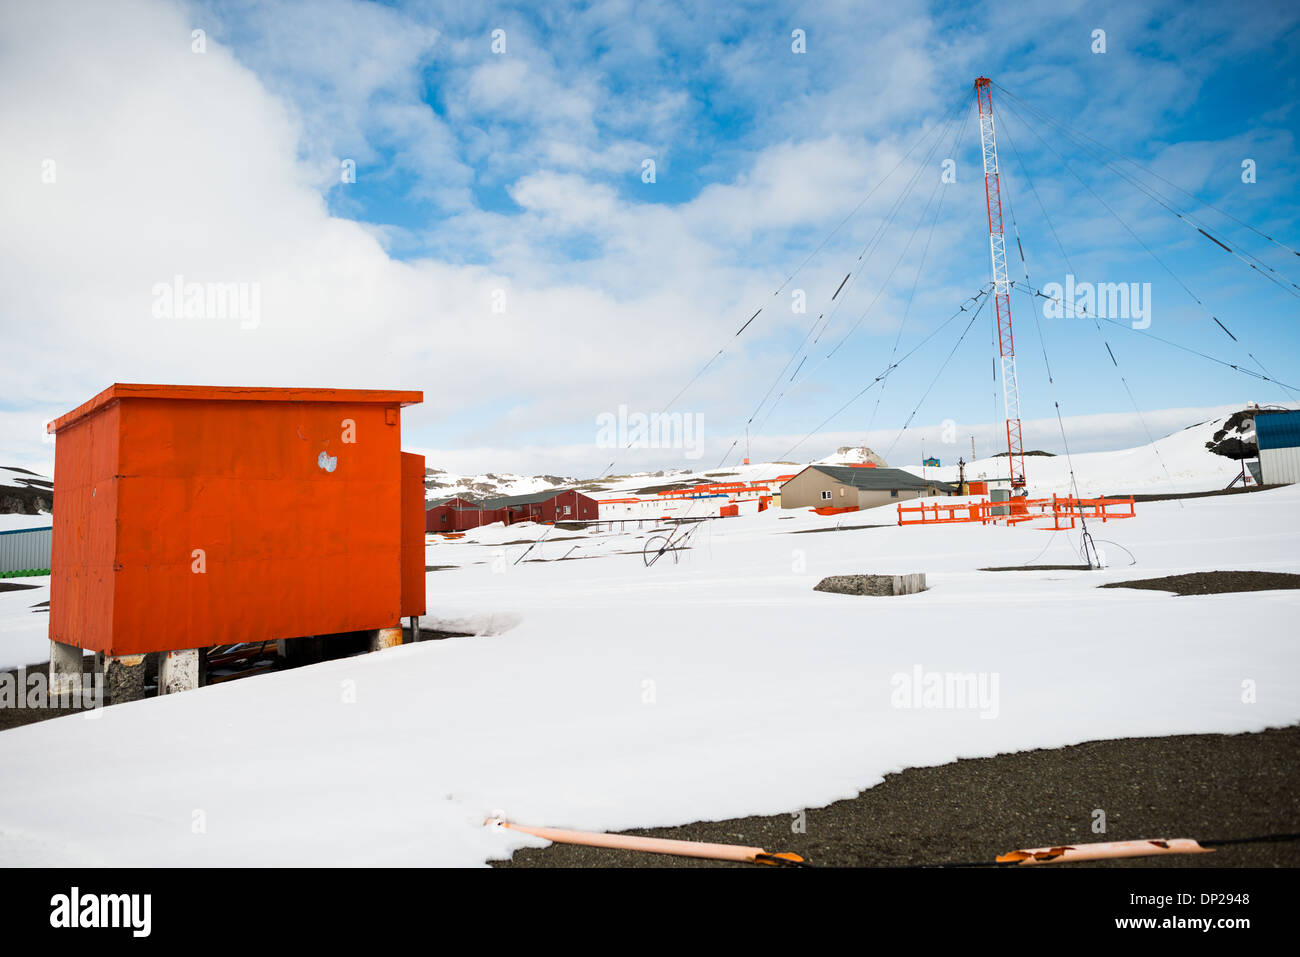 Antarktis - Gebäude und einem großen Radio Antenne am Bellingshausen Station, eine russische wissenschaftliche Forschungsbasis auf King George Island in der Antarktis. Stockfoto